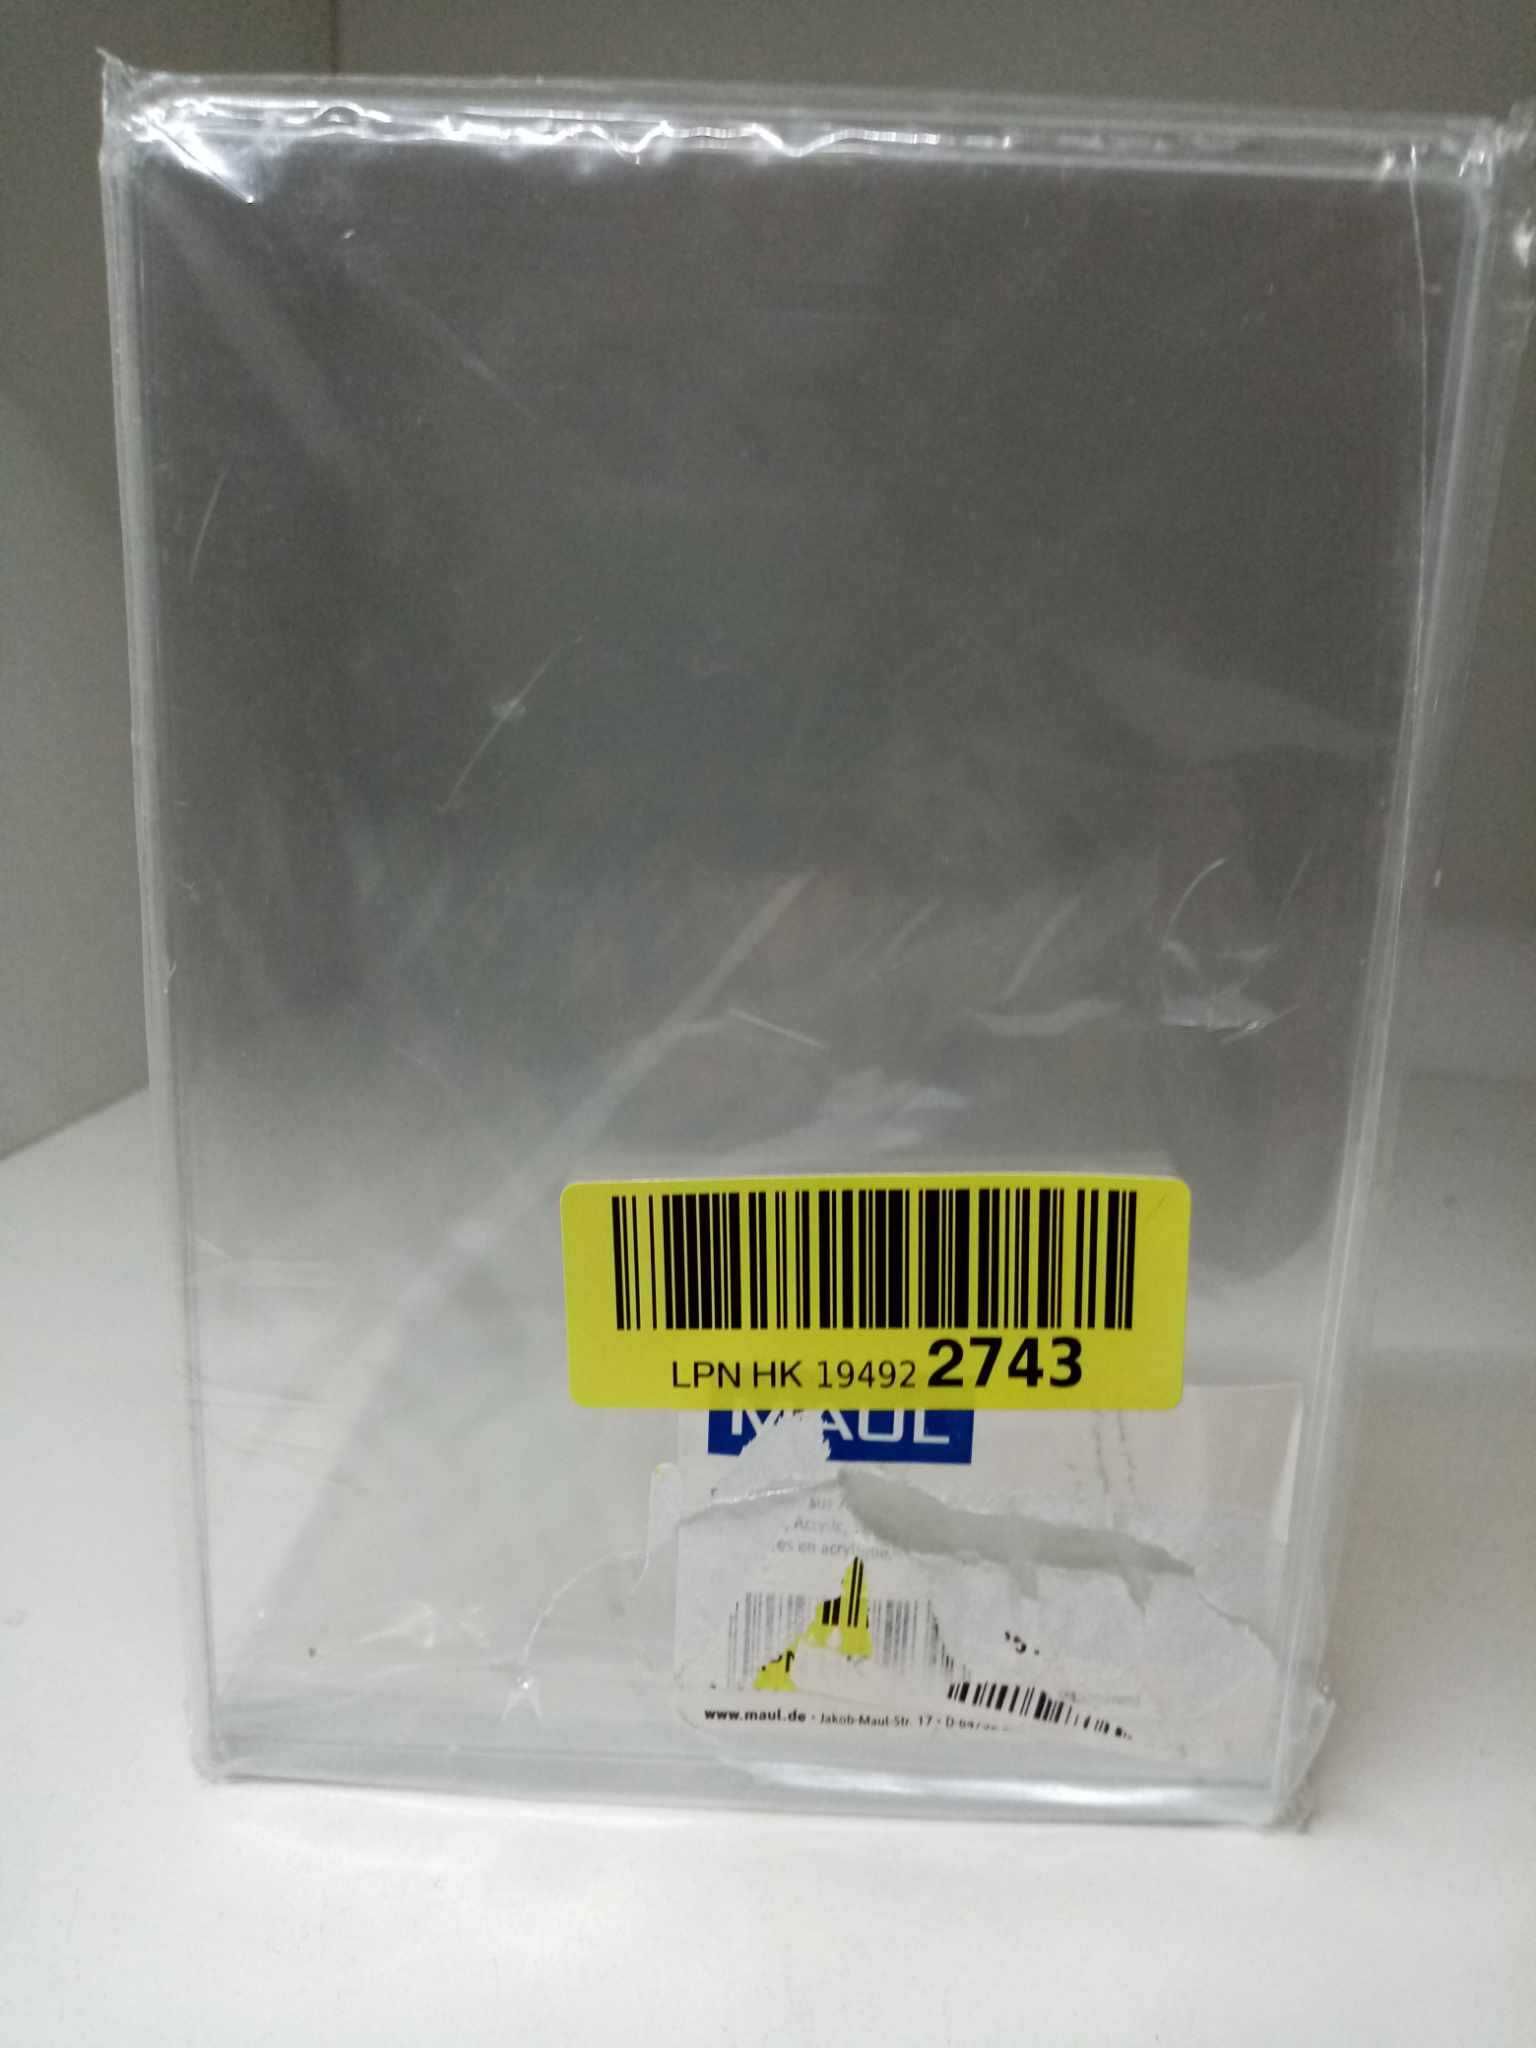 Maul 35137 podpórka do książek akrylowa